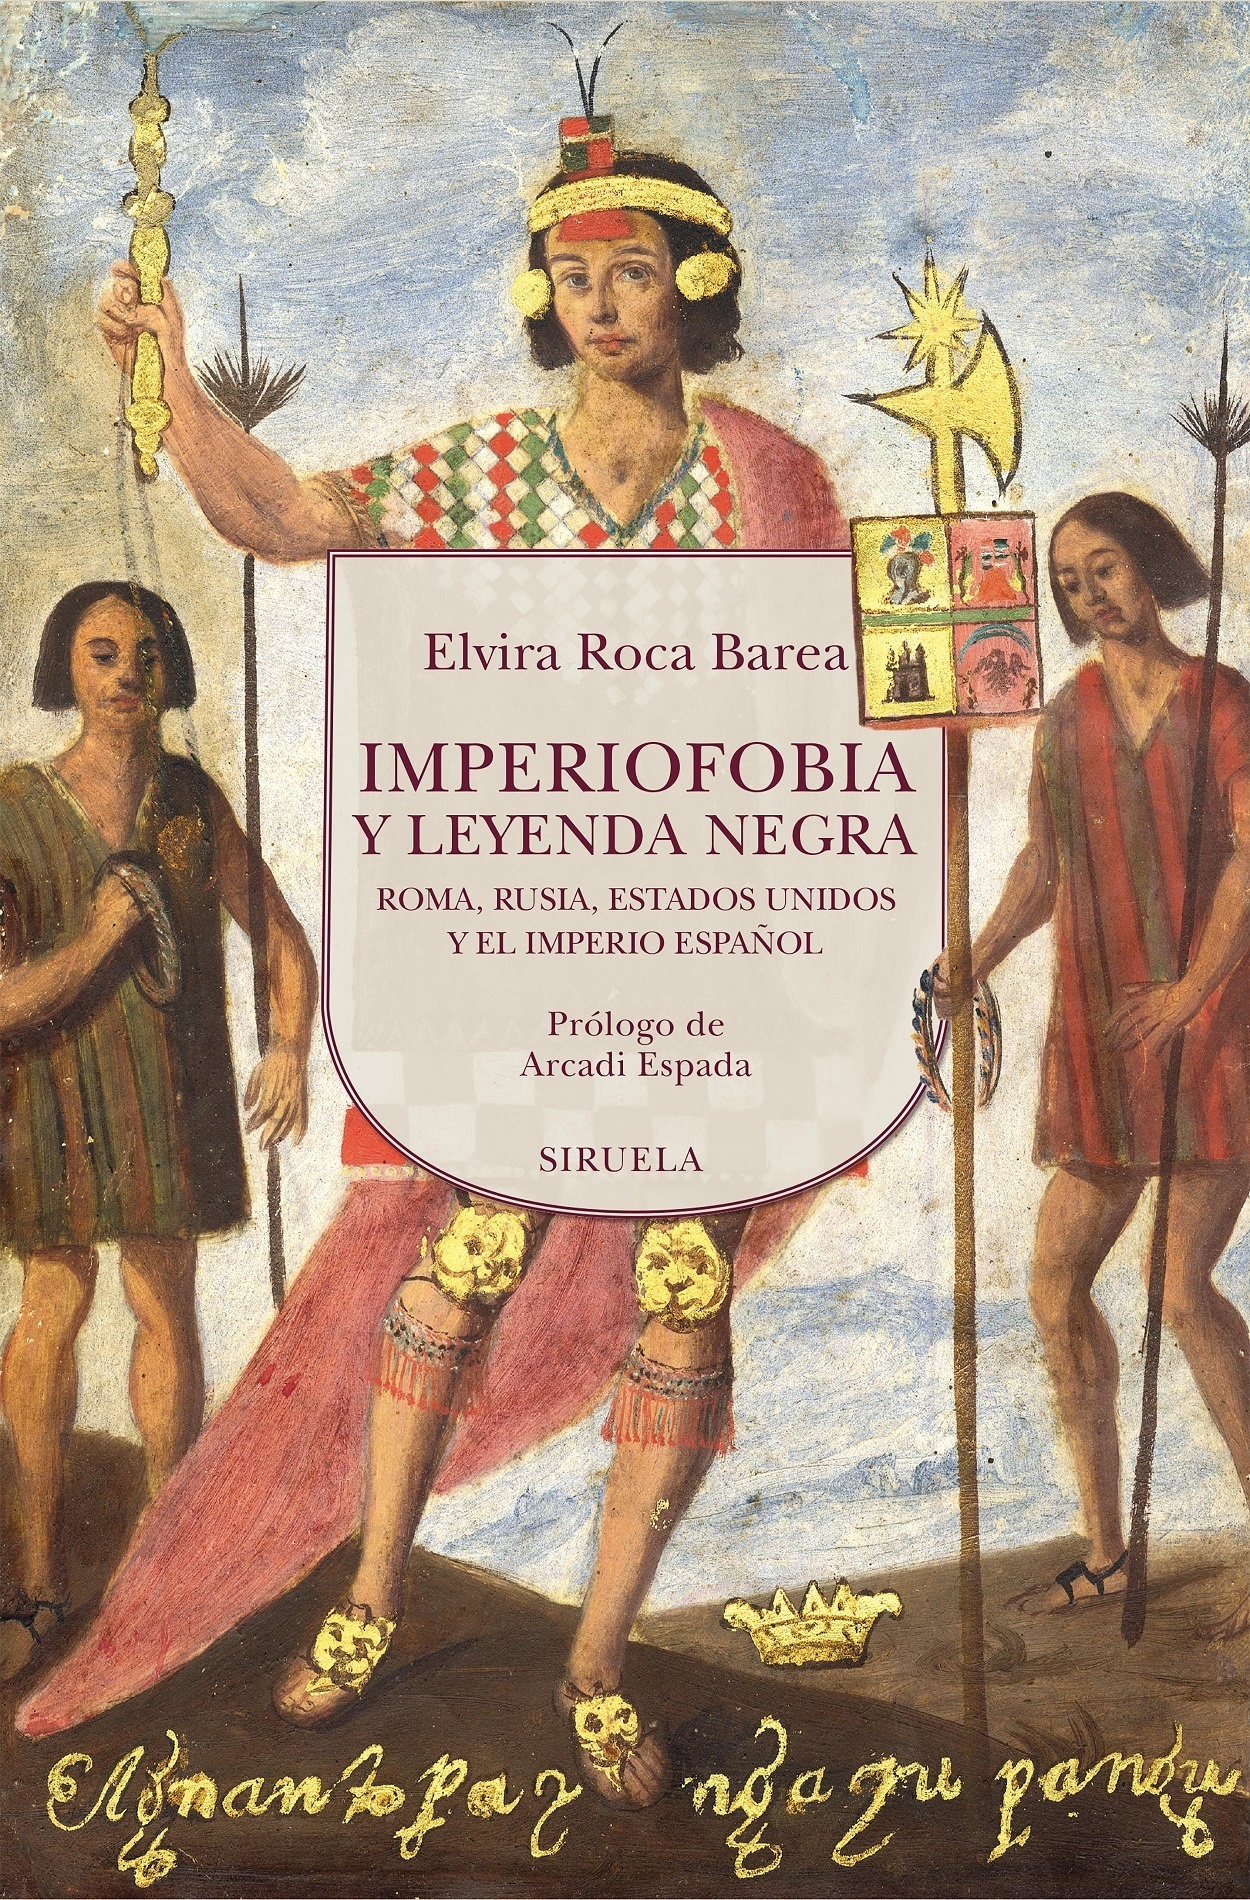 Imperiofobia y leyenda negra "Roma, Rusia, Estados Unidos y el Imperio español". 